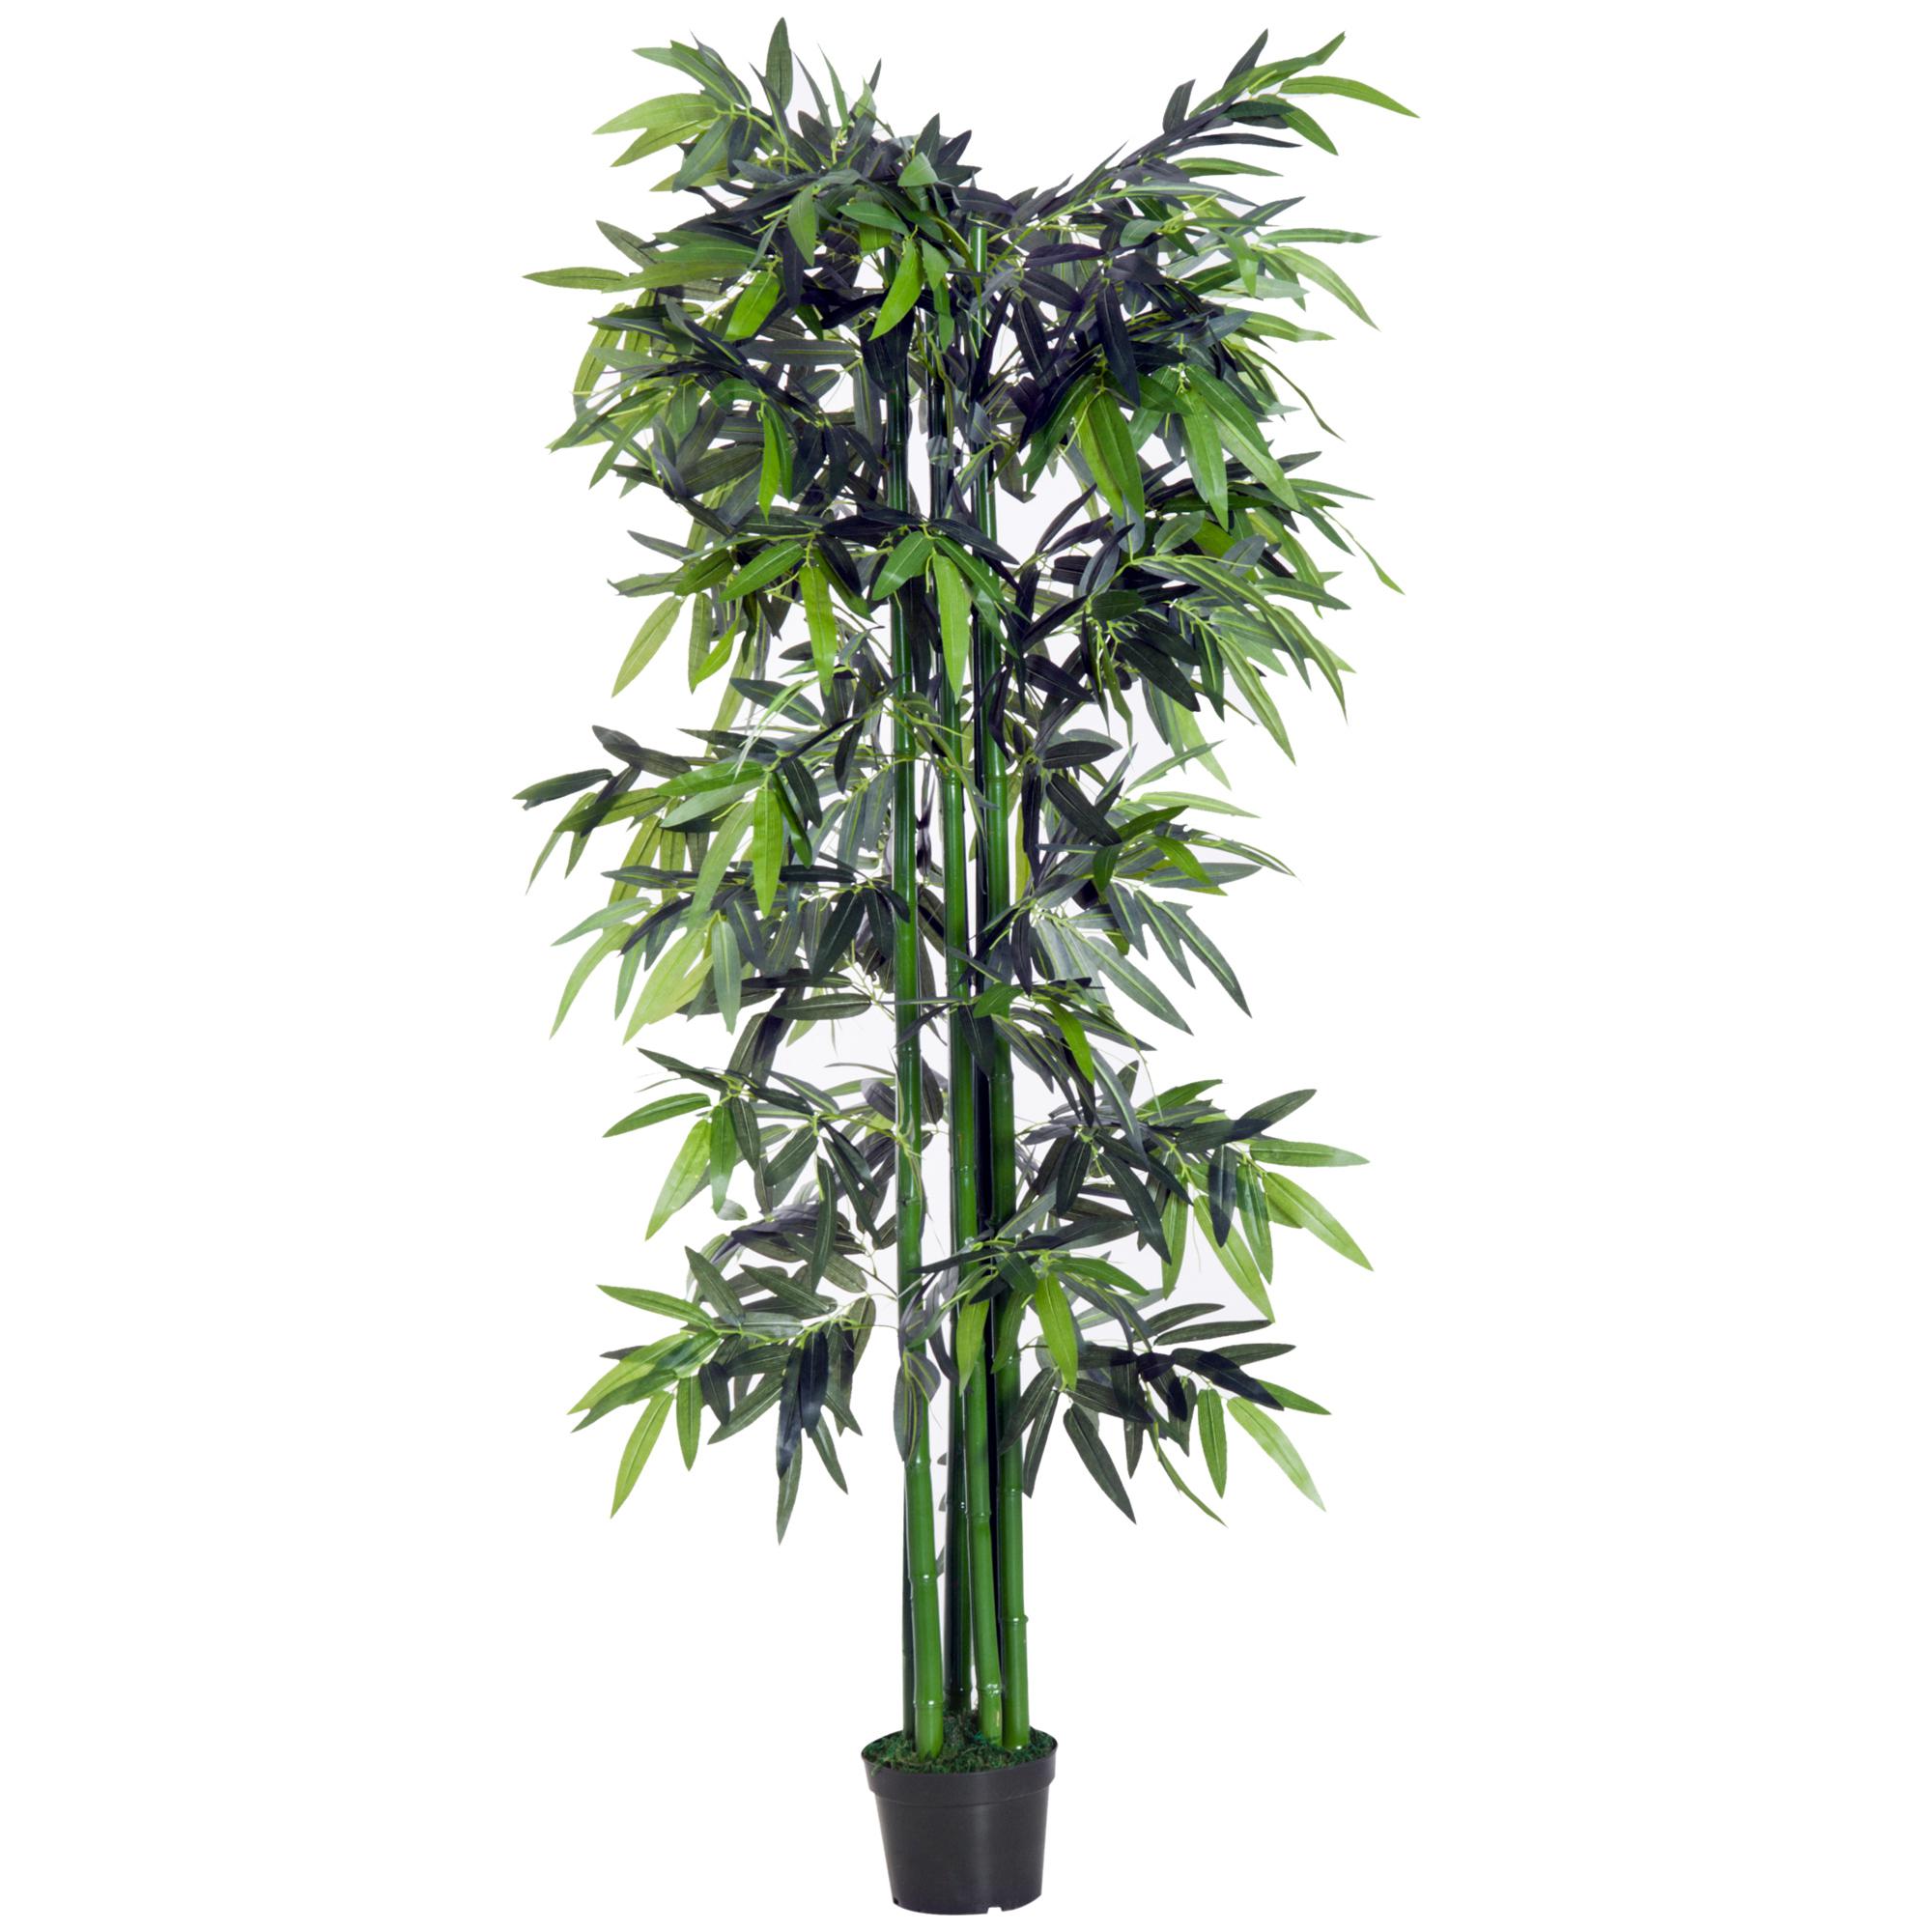 Bambou artificiel XXL 1,80H m 1105 feuilles denses réalistes pot inclus noir vert